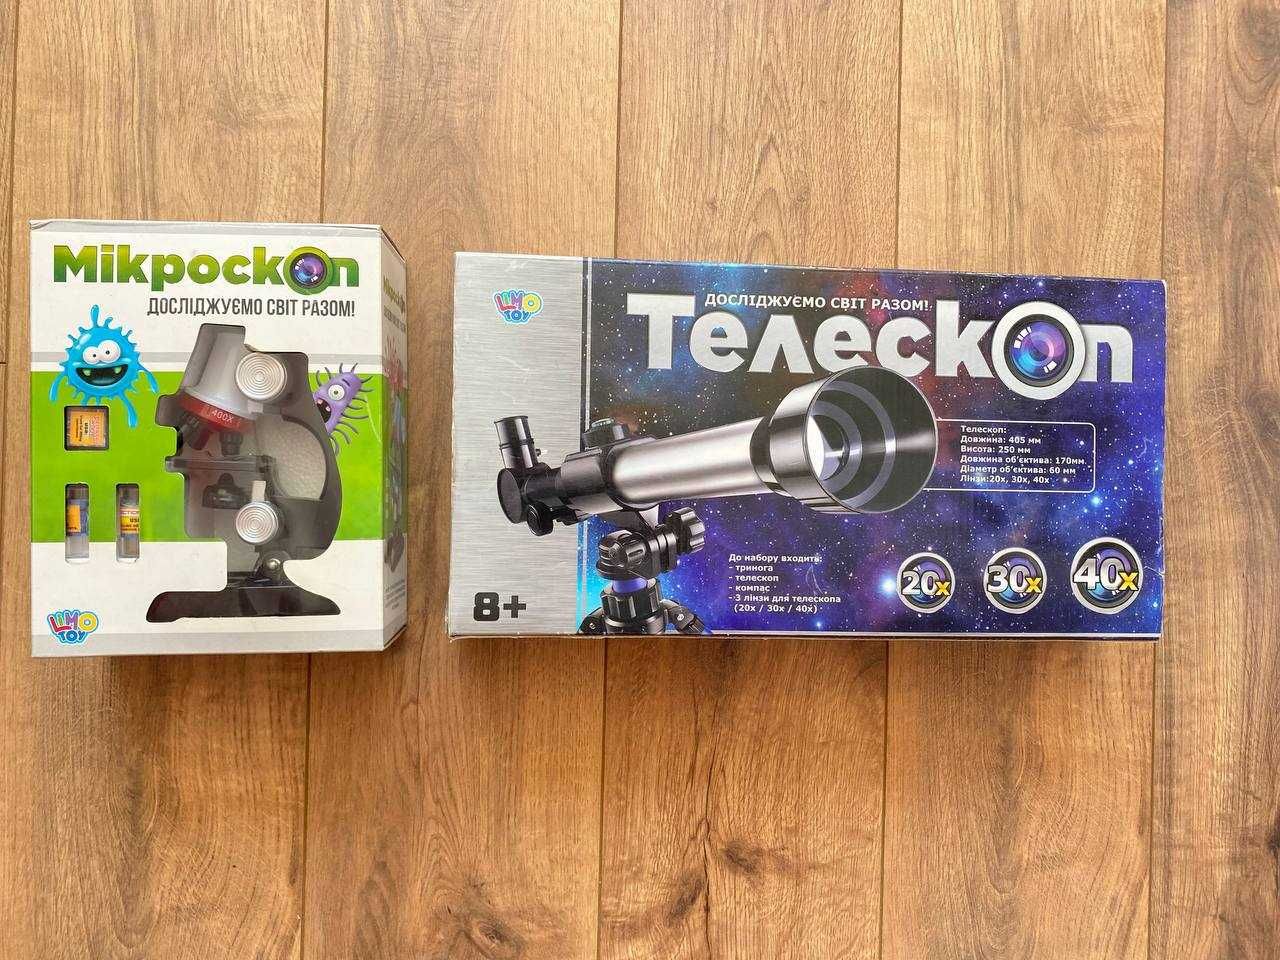 Мікроскоп (3+) та Телескоп (8+) дитячі